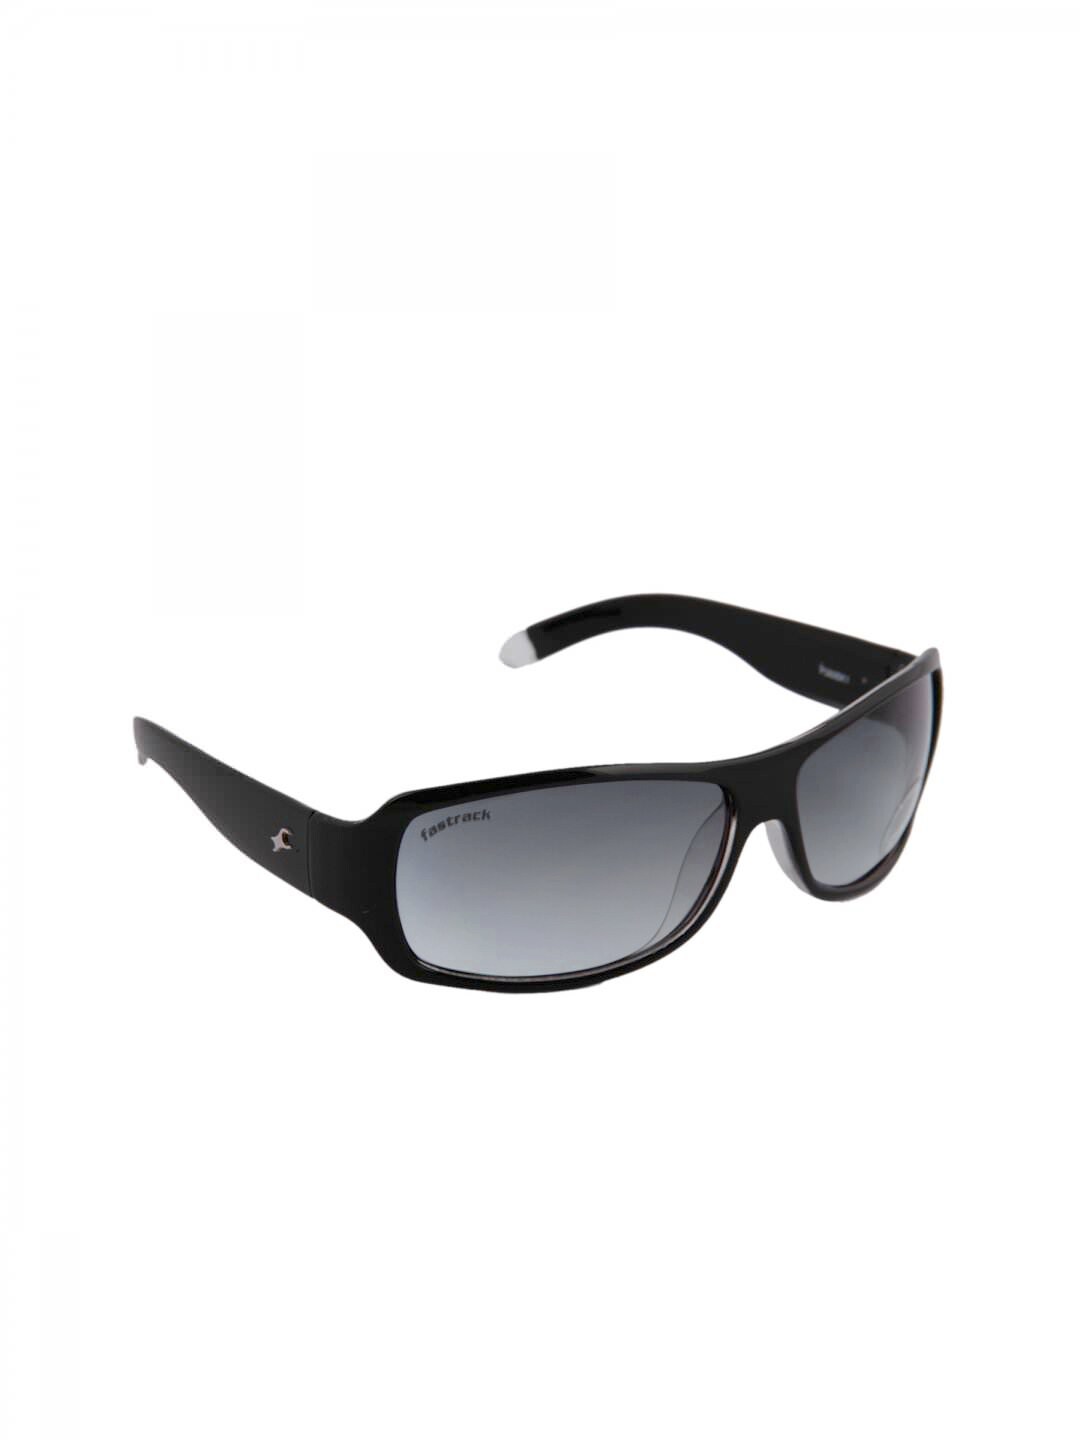 Fastrack Unisex Sunglasses